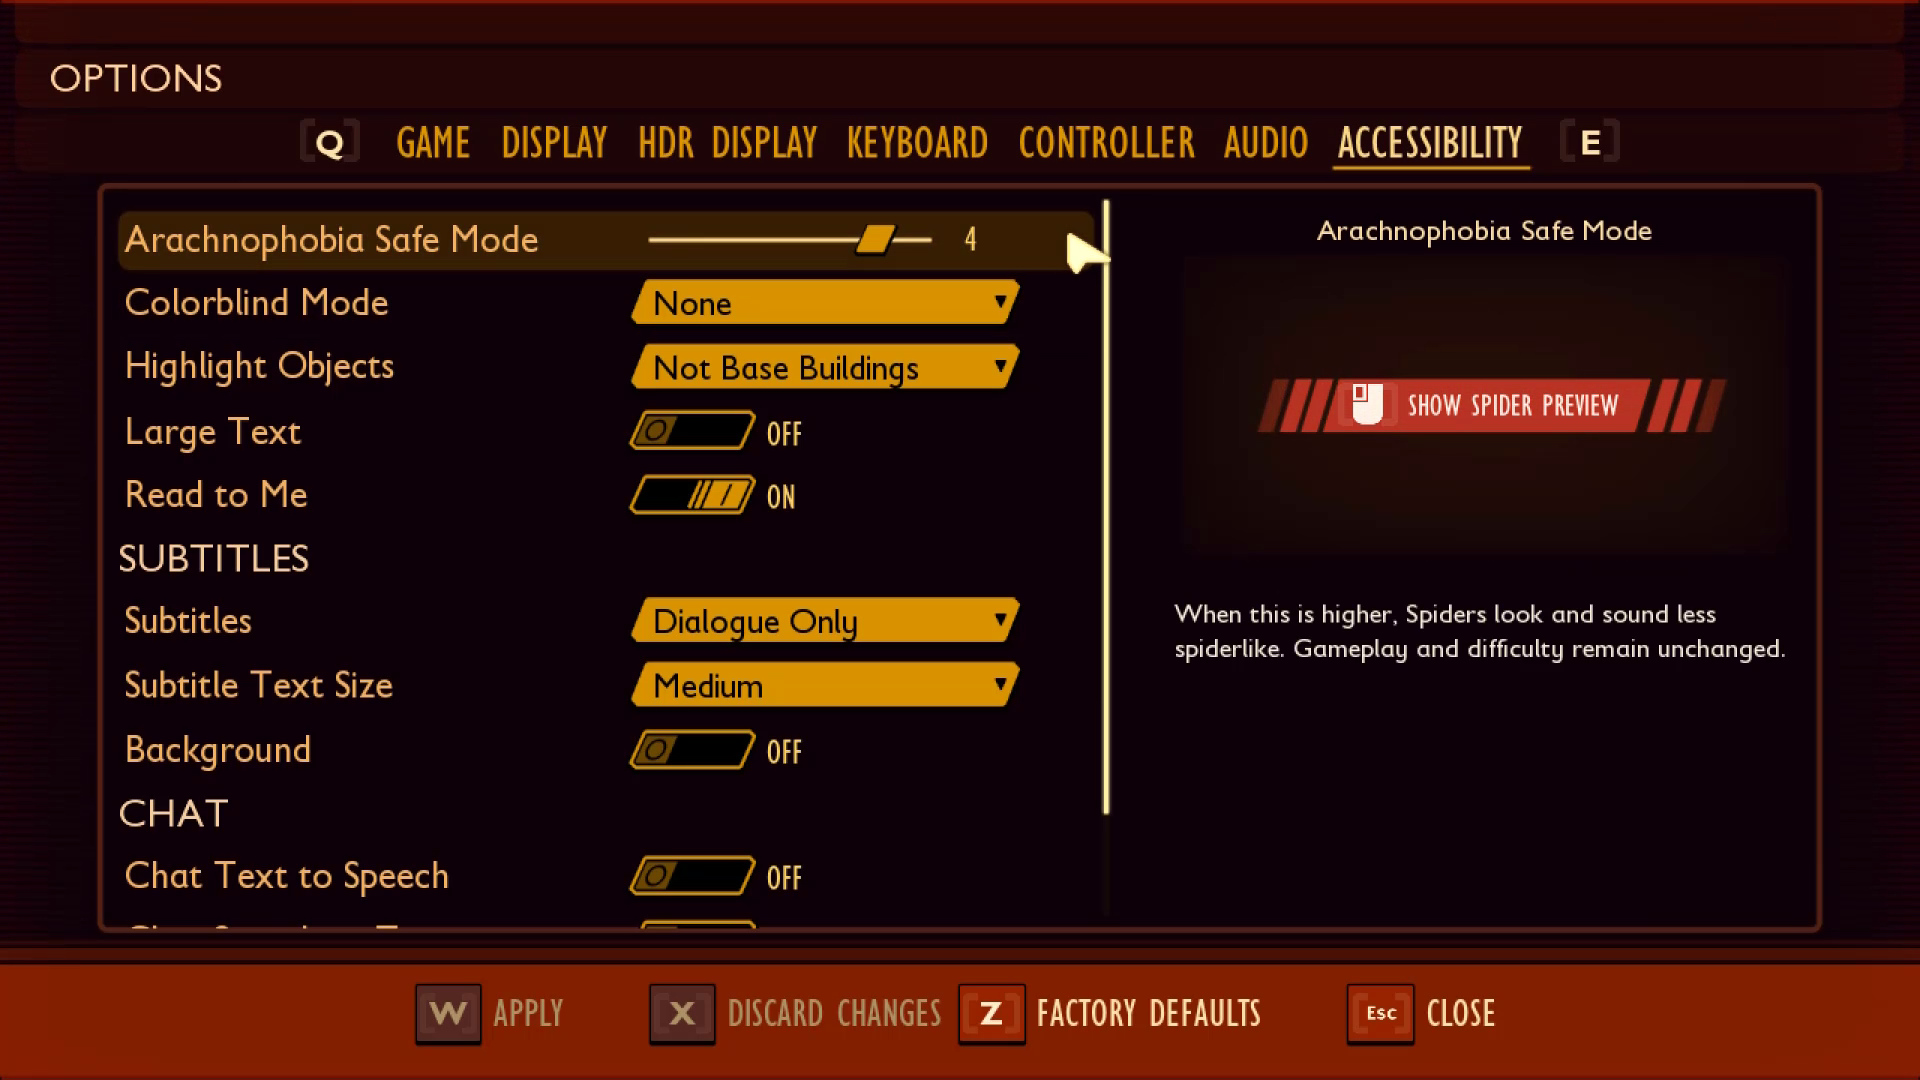 「オプション メニュー」を表示している、Grounded のスクリーンショット。 [アクセシビリティ] タブが選択され、画面の右側のウィンドウに [Arachnophobia Safe Mode] が表示されます。